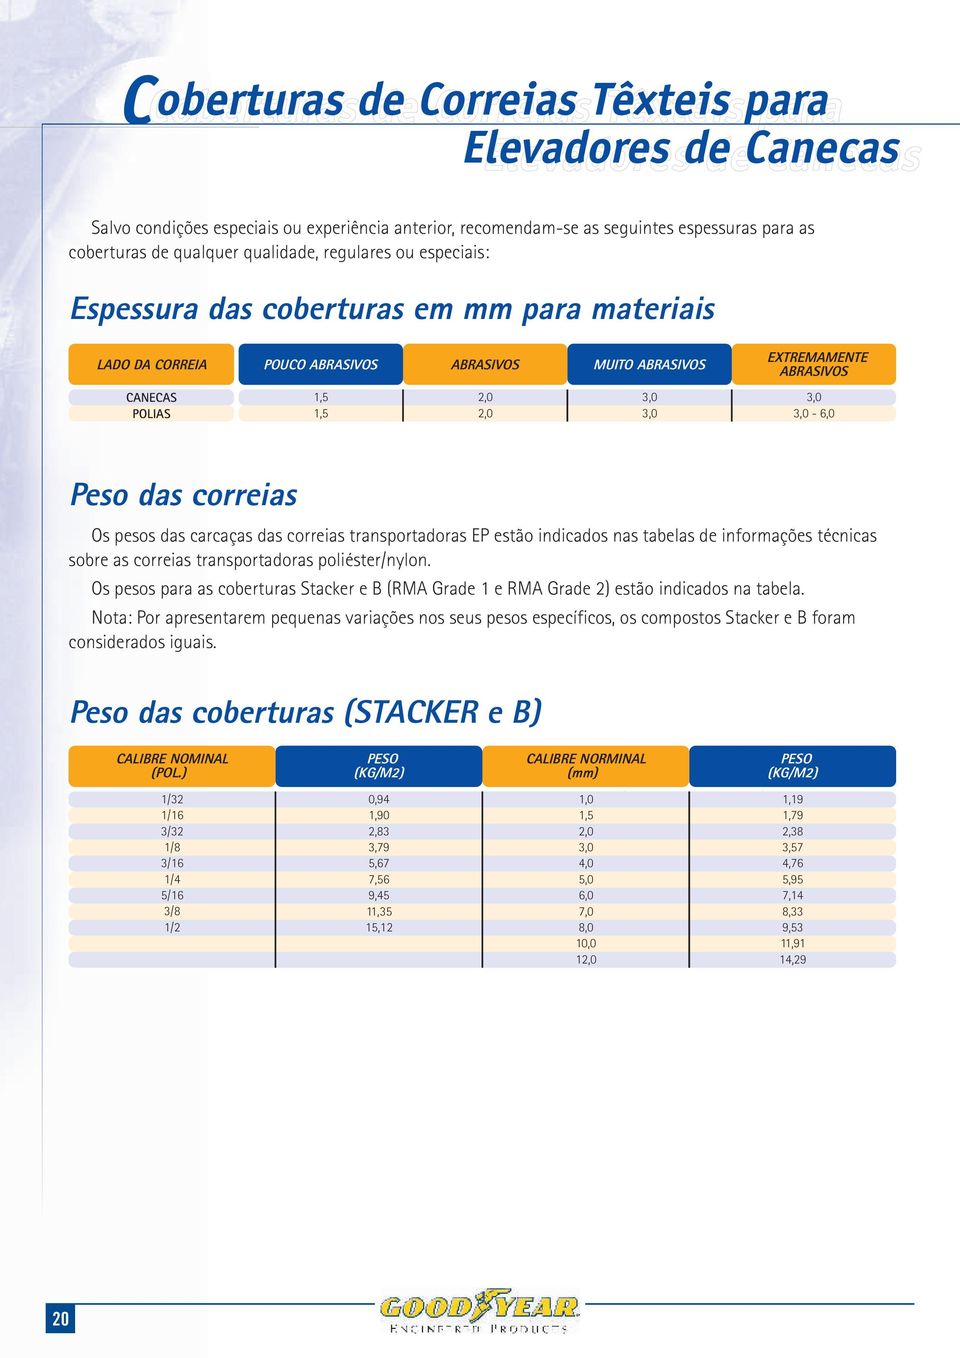 correias Os pesos das carcaças das correias transportadoras EP estão indicados nas tabelas de informações técnicas sobre as correias transportadoras poliéster/nylon.